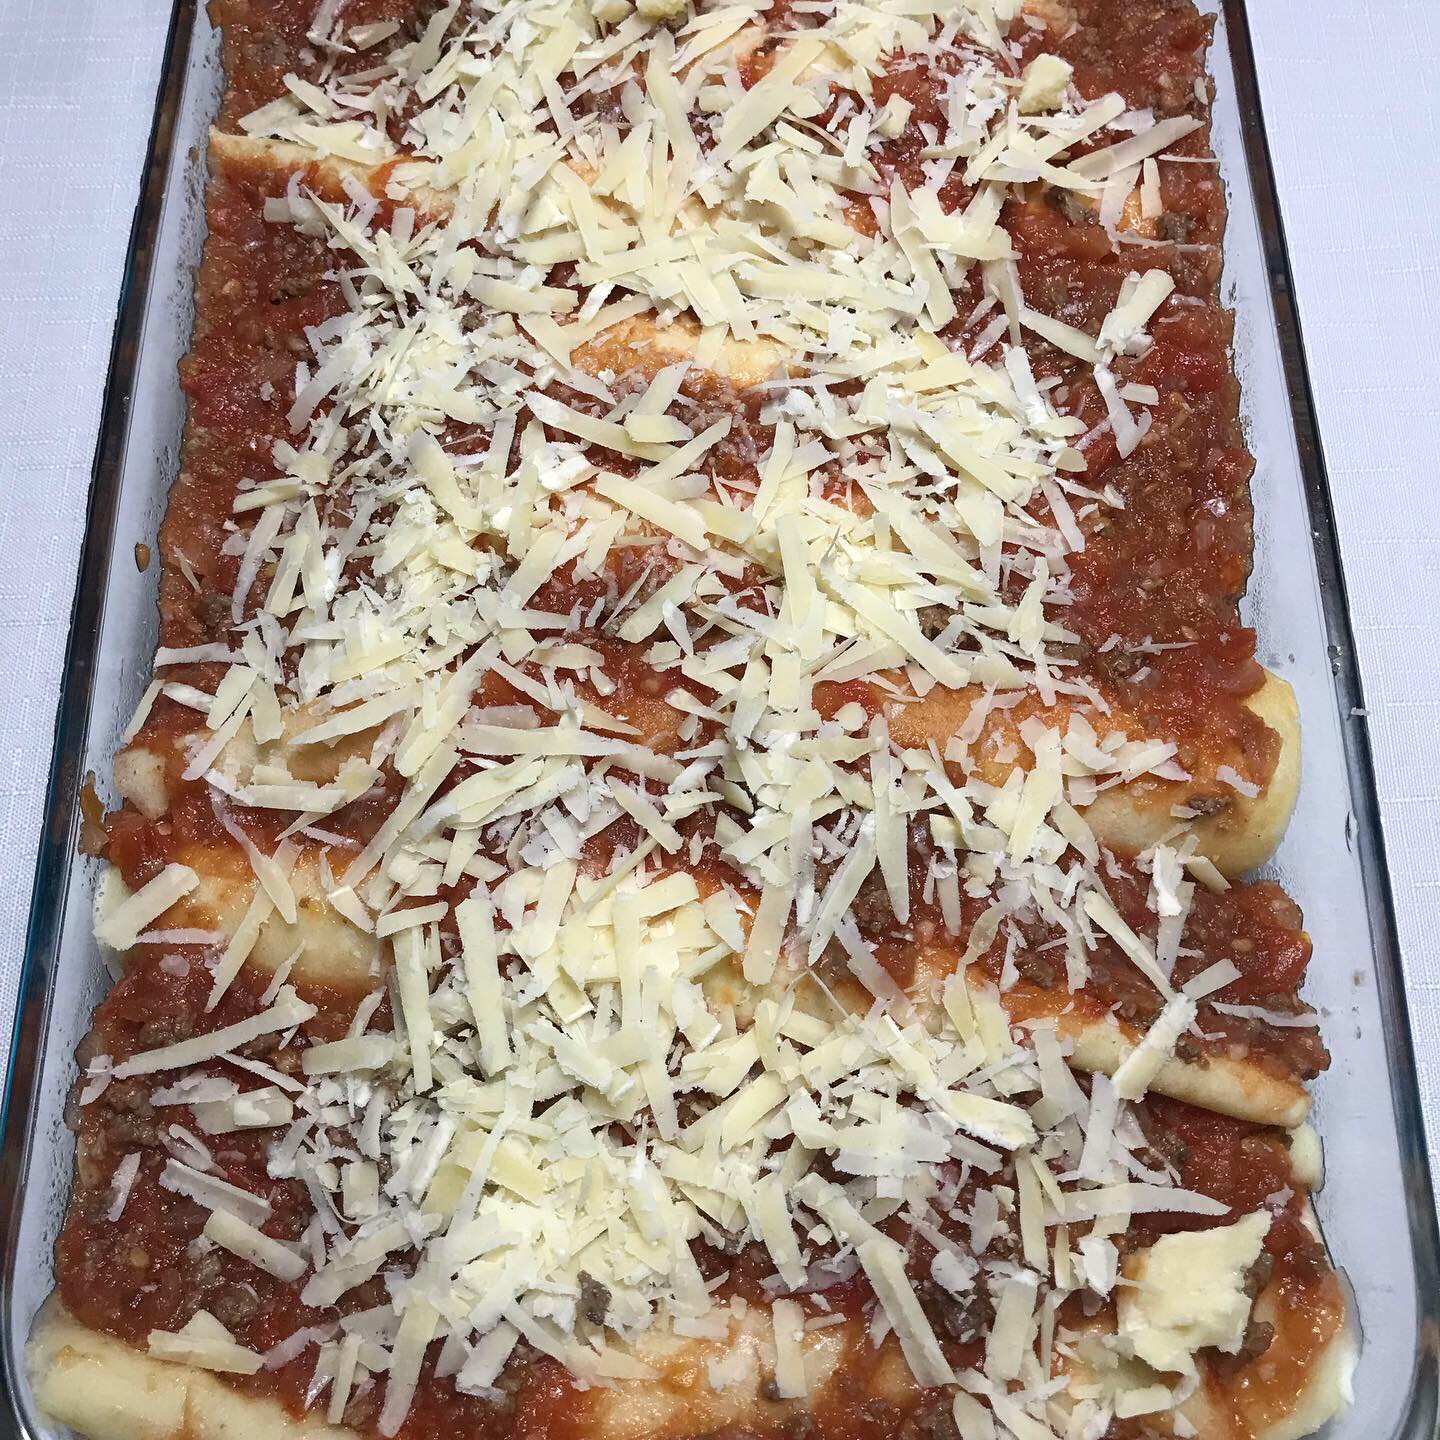 Panqueque salado sin gluten, listo y relleno de carne molida, acompañado de salsa de tomate casera, terminado con queso parmesano rallado.